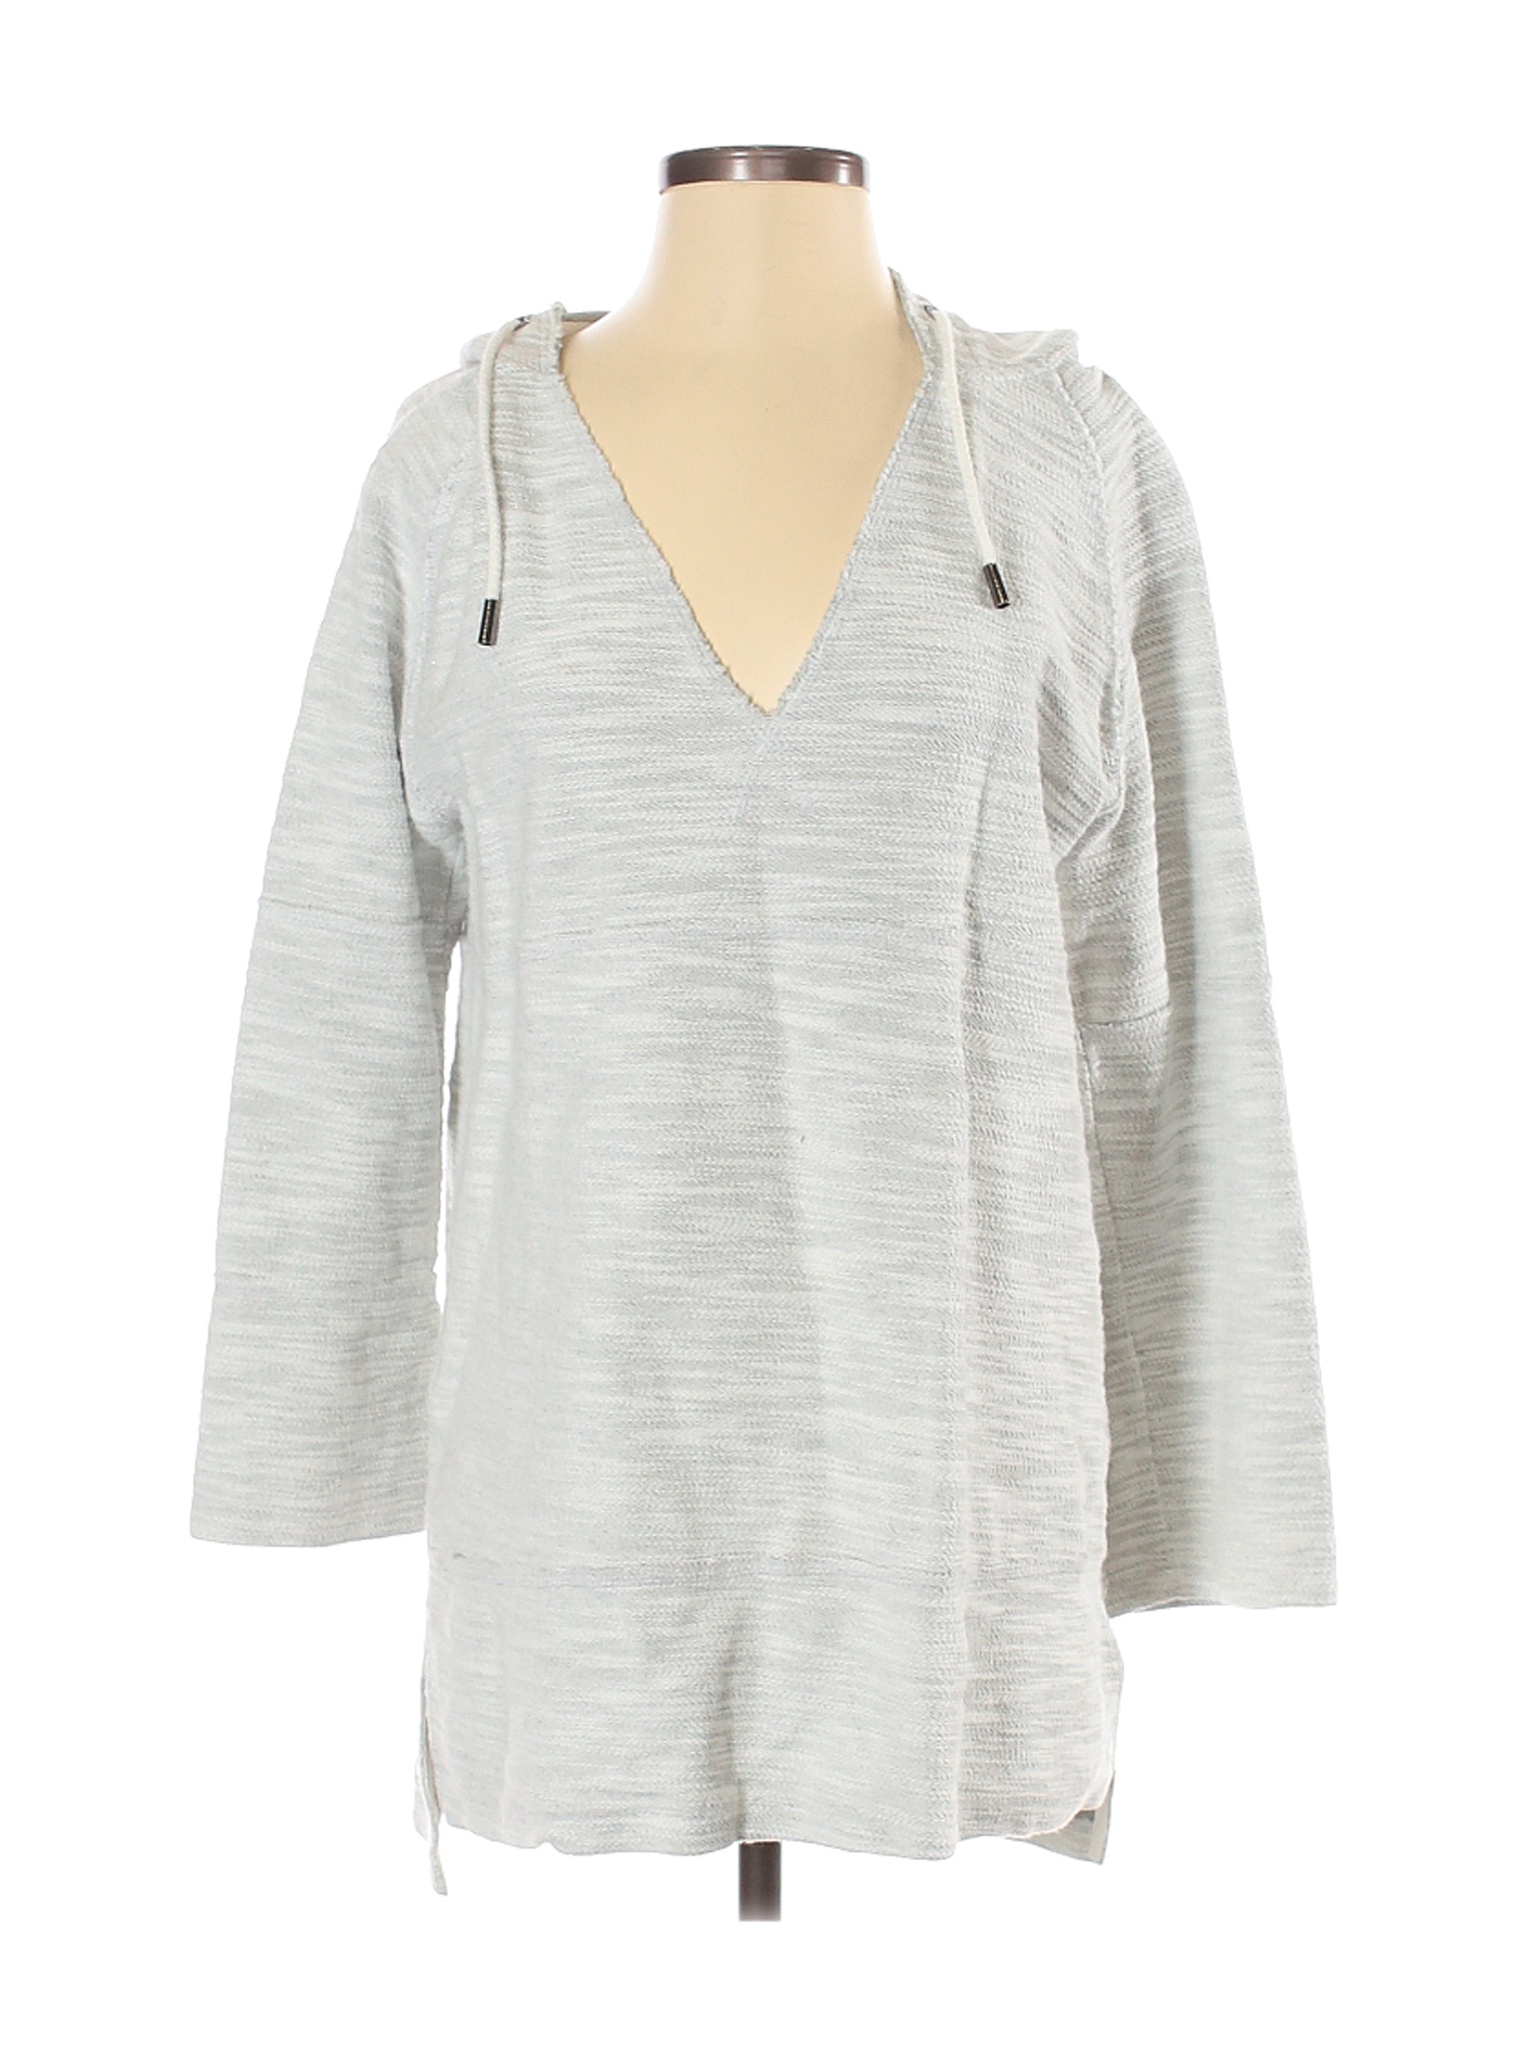 Soft Surroundings Women Gray Pullover Hoodie S | eBay